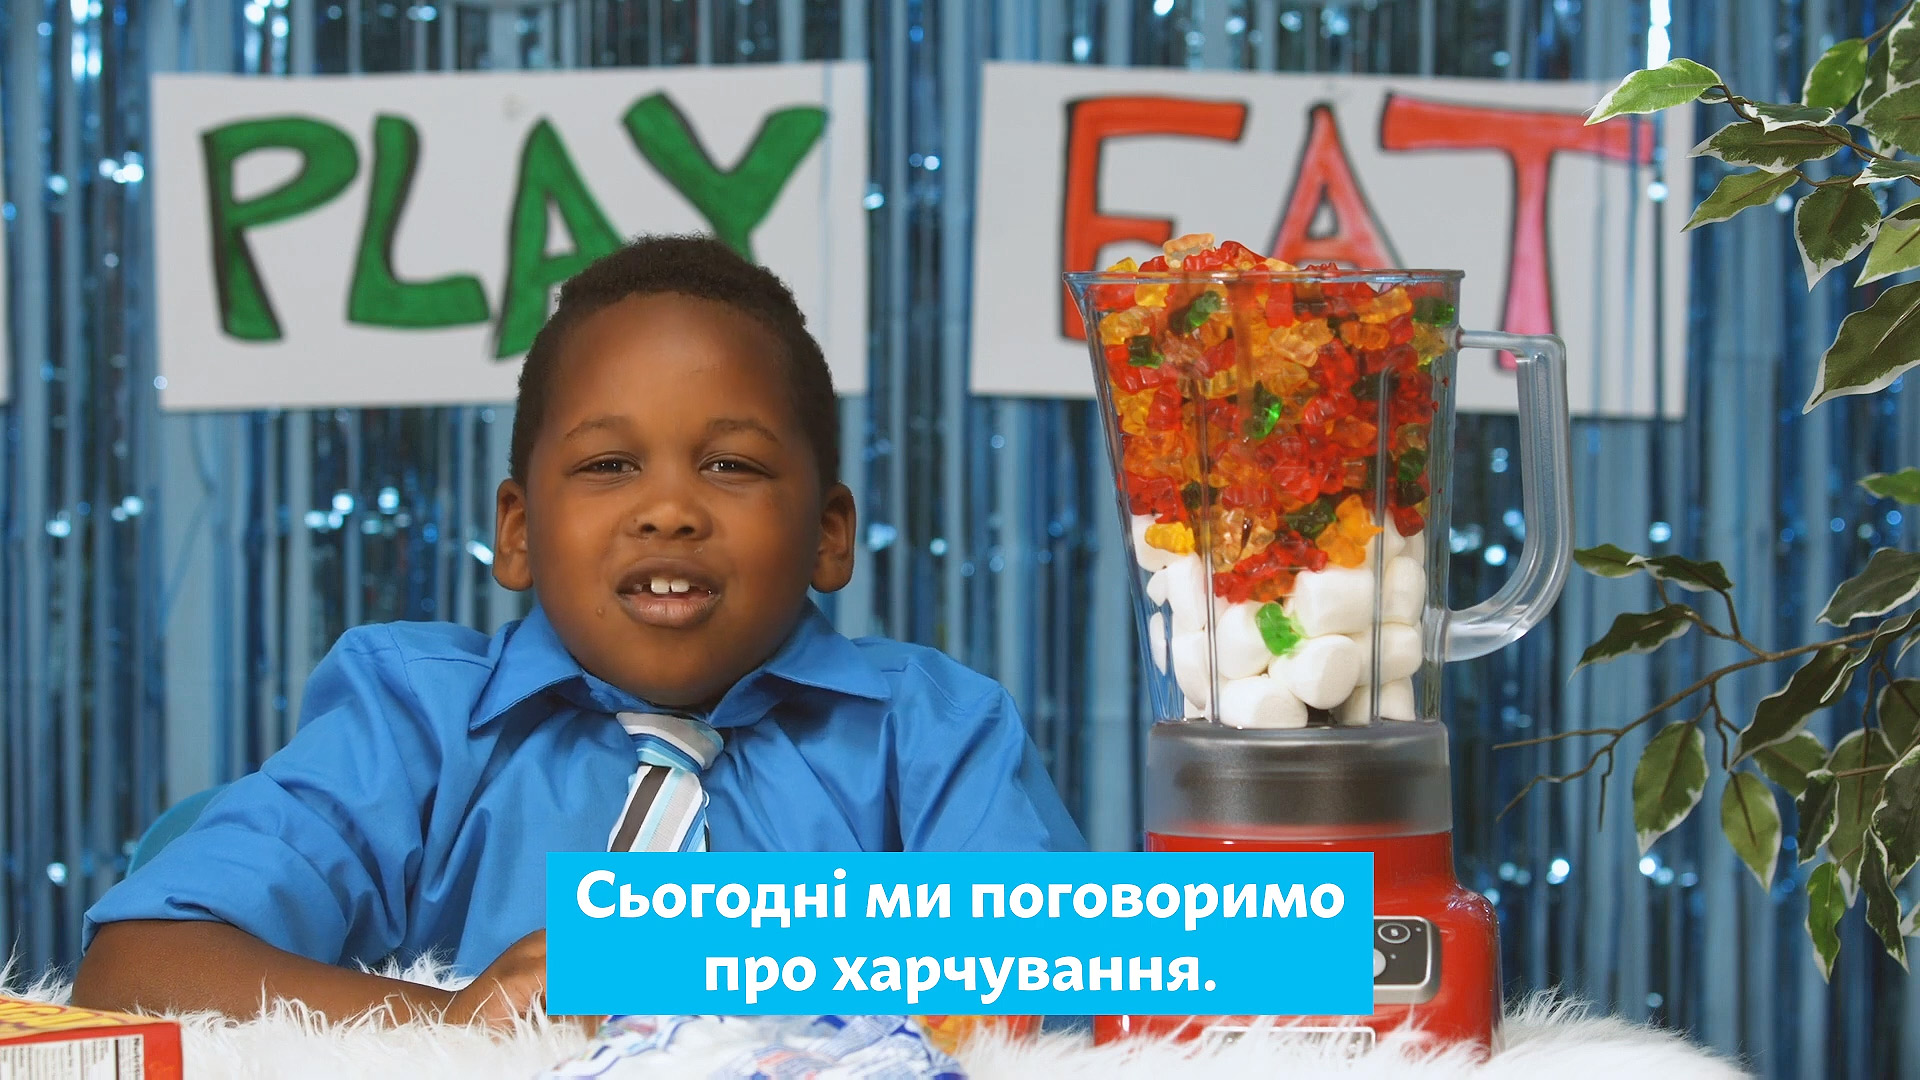 Зображення американського школяра, який говорить "Сьогодні ми поговоримо про харчування"